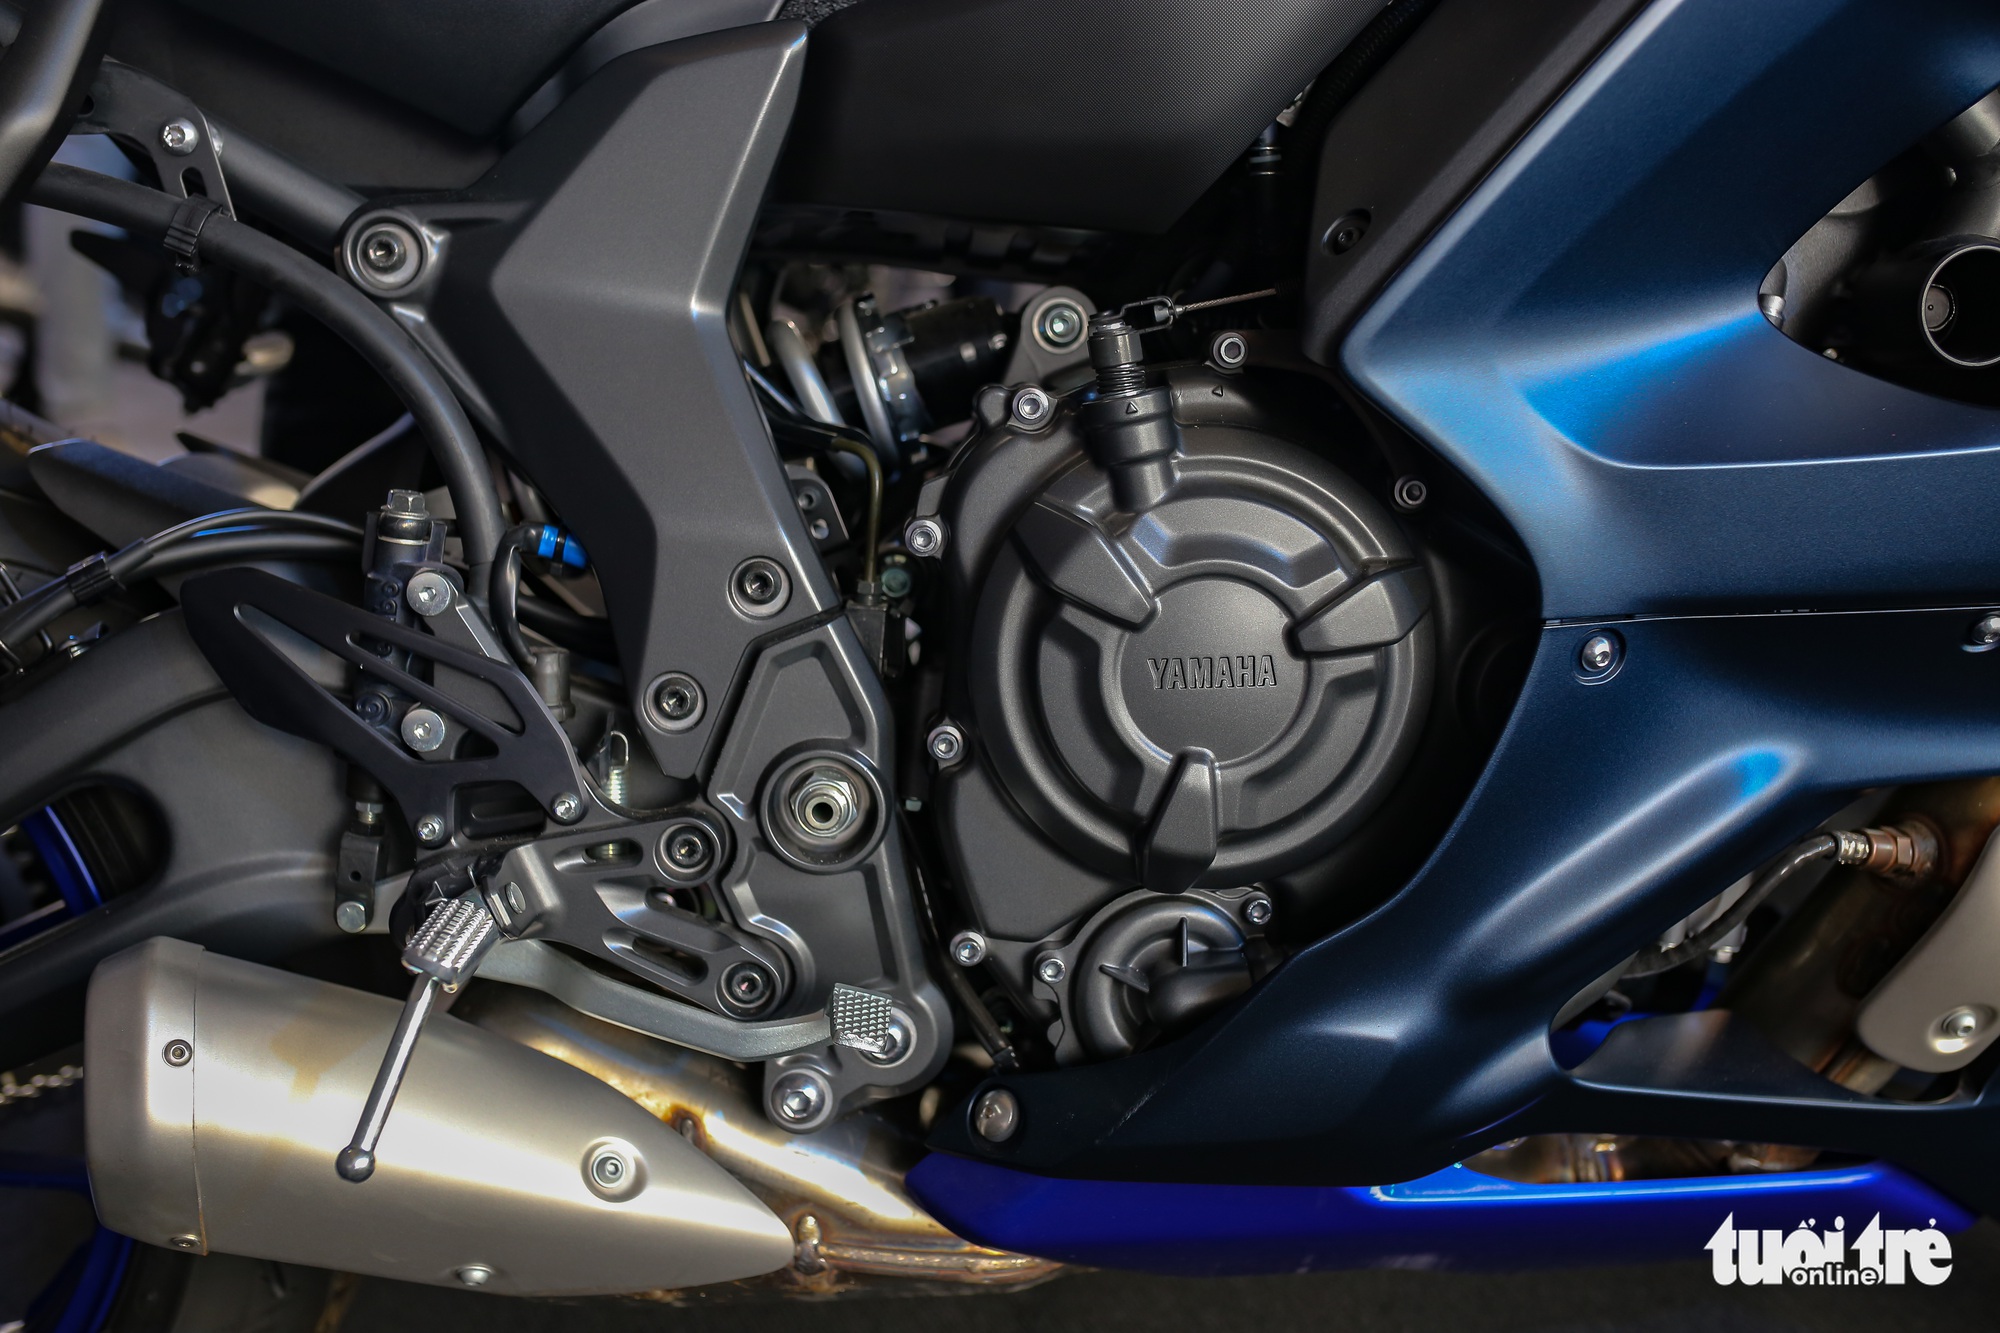 Yamaha YZF-R7 - Sportbike tầm trung giá 269 triệu đồng, thay thế 'huyền thoại' R6 - Ảnh 11.